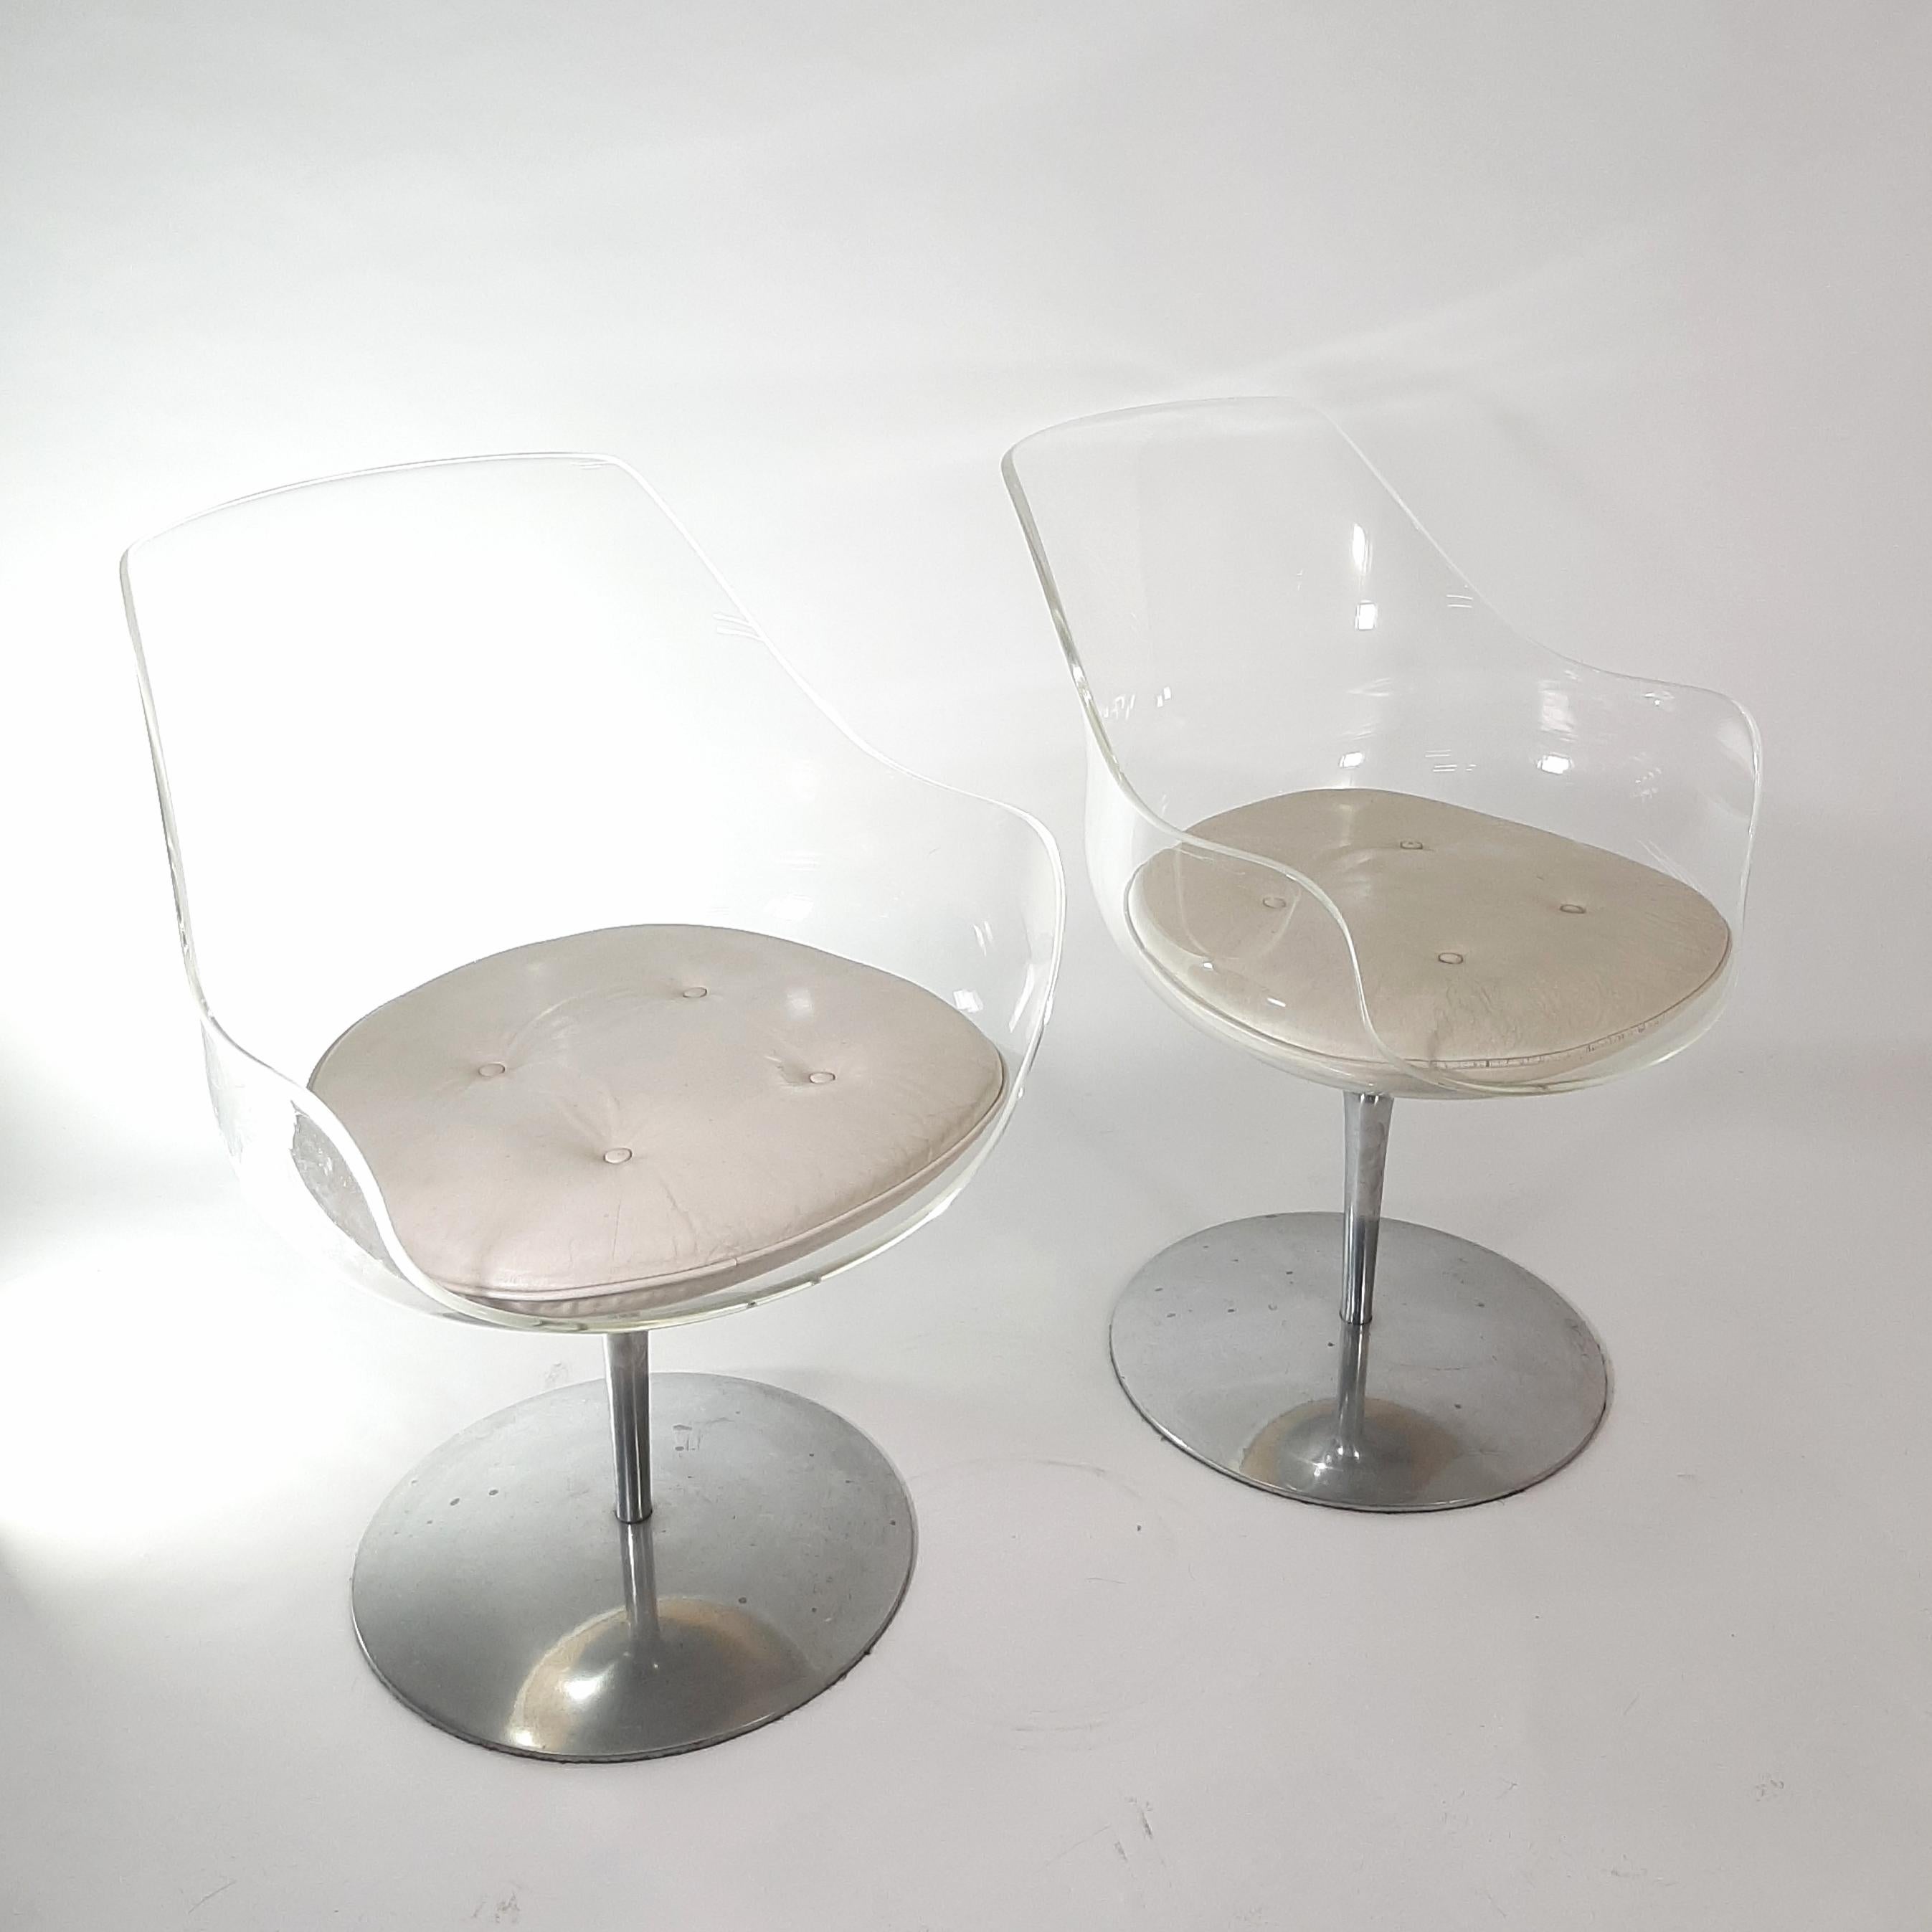 Satz von zwei Champagner-Stühlen aus Lucit, entworfen von Erwine & Estelle Laverne, um 1960.
Herausgegeben von Formes Nouvelles.

Mit seiner Sitzschale aus transparentem Lucite und dem Fußkreuz aus Aluminium bietet der Champagne-Stuhl eine hohe